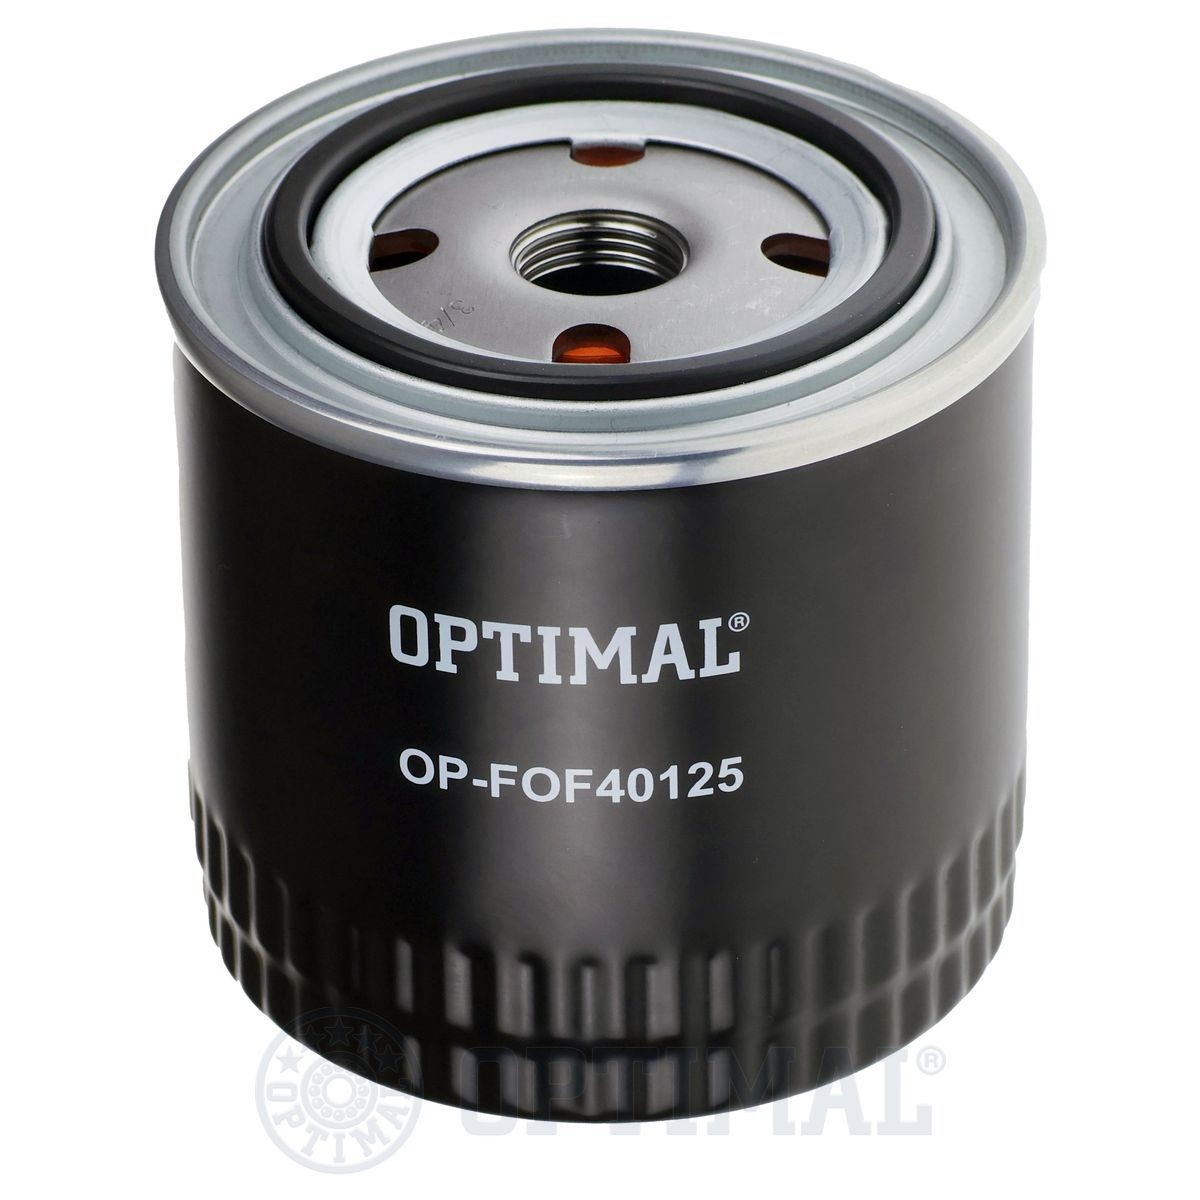 OPTIMAL OP-FOF40125 Filtre à huile pas cher chez magasin en ligne